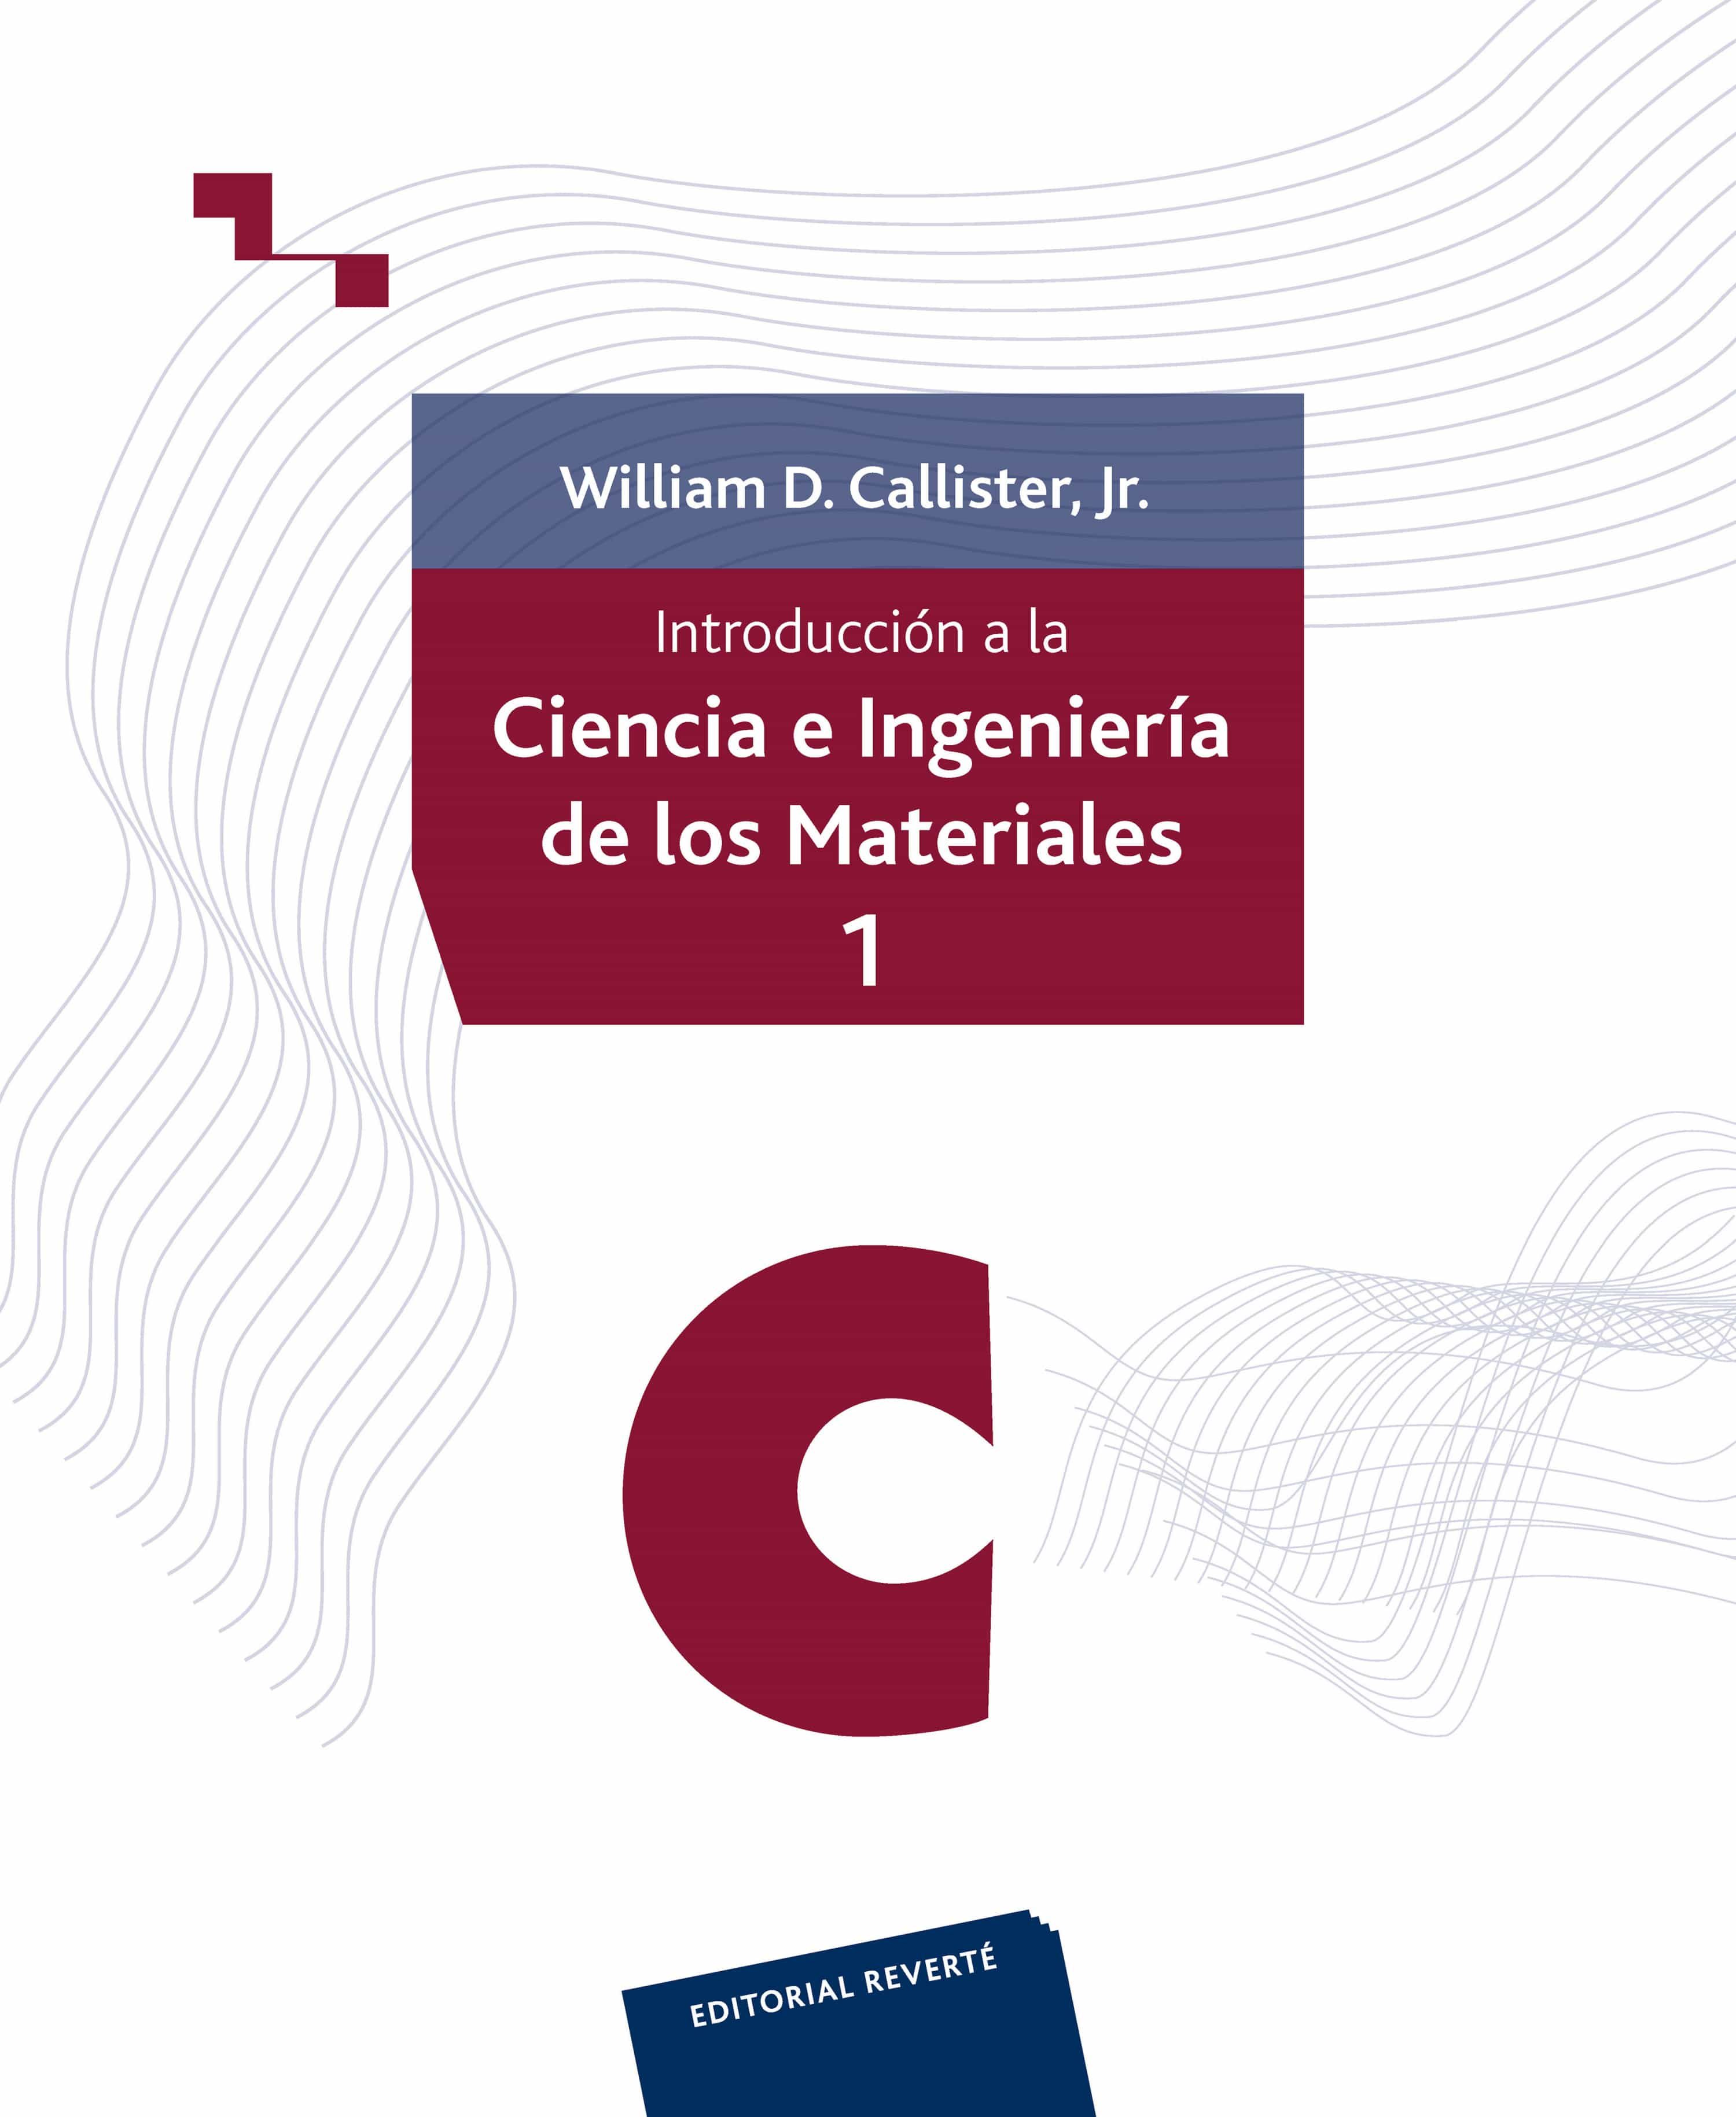 Resultado de imagen para Introduccion a la Ciencia e Ingenieria de los materiales - William D. Callister